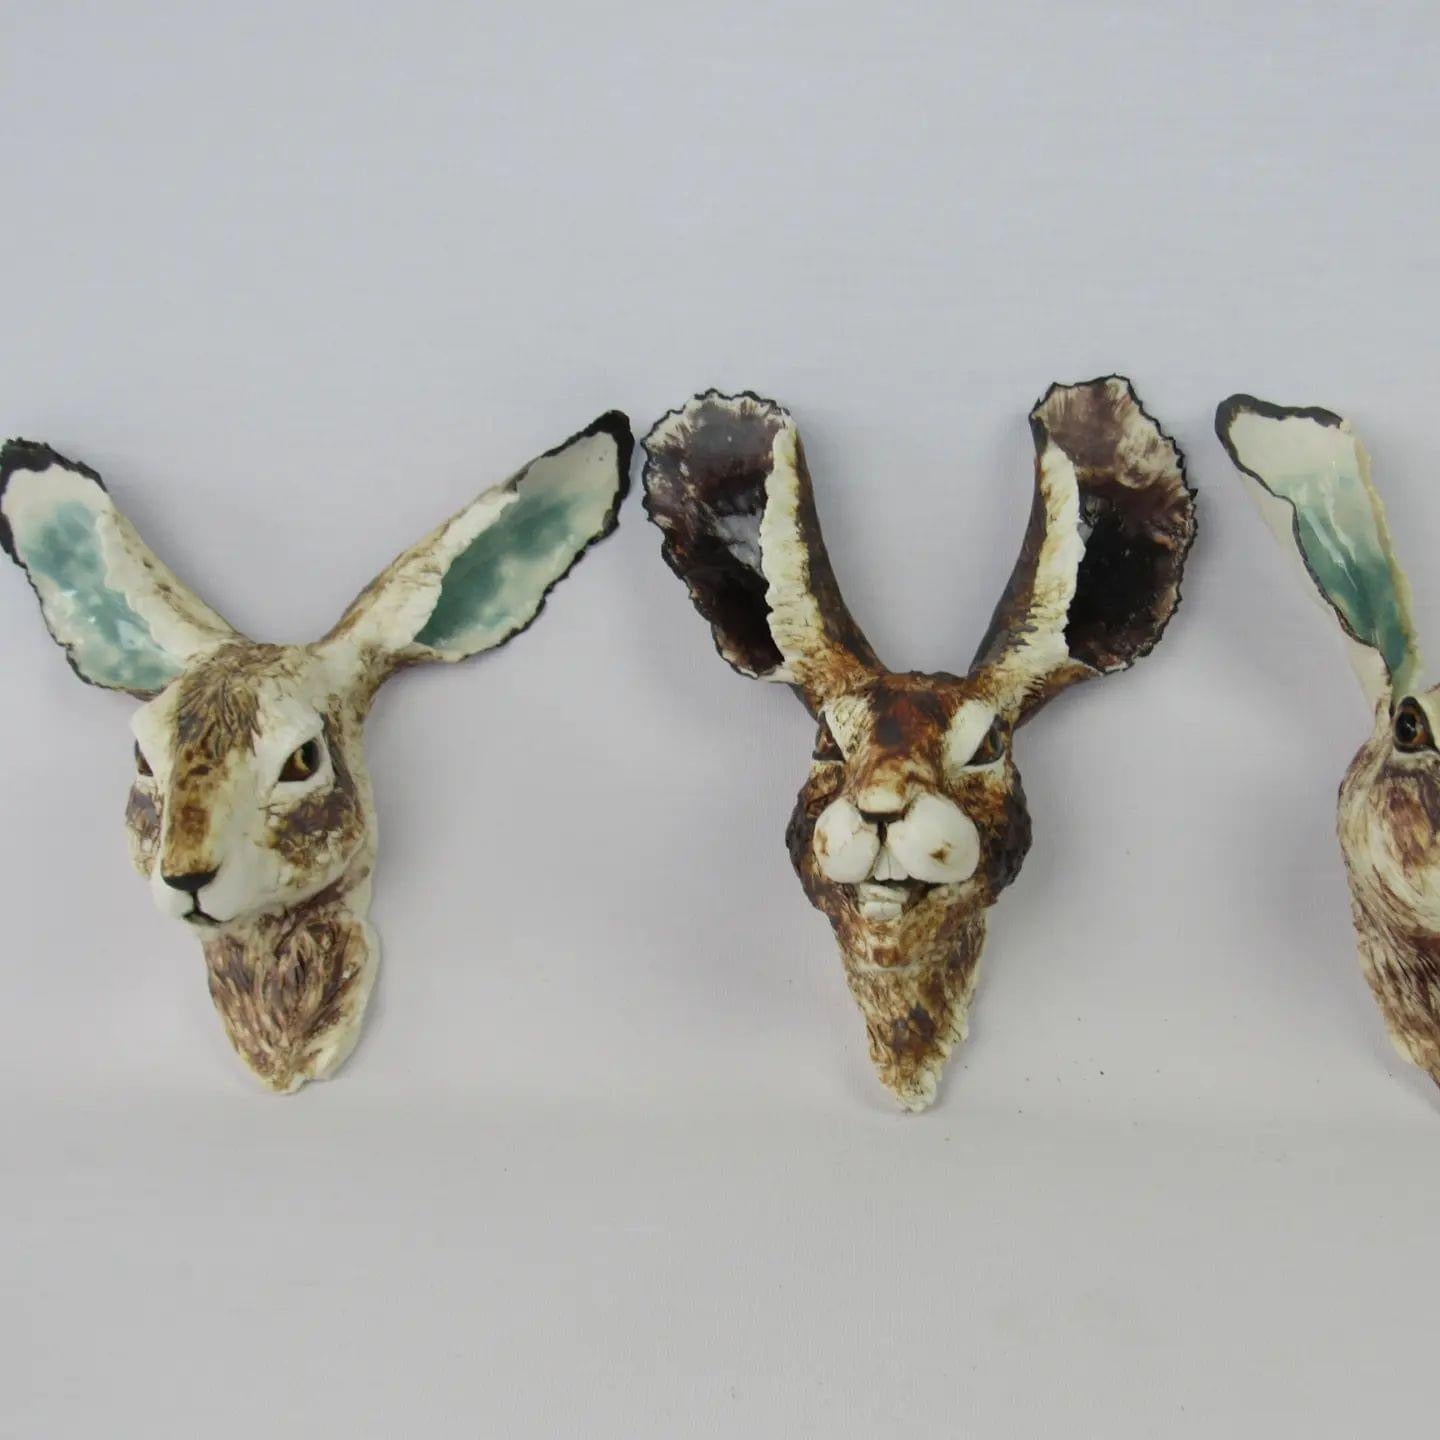 Hare Head Sculptures by Liz McLelland